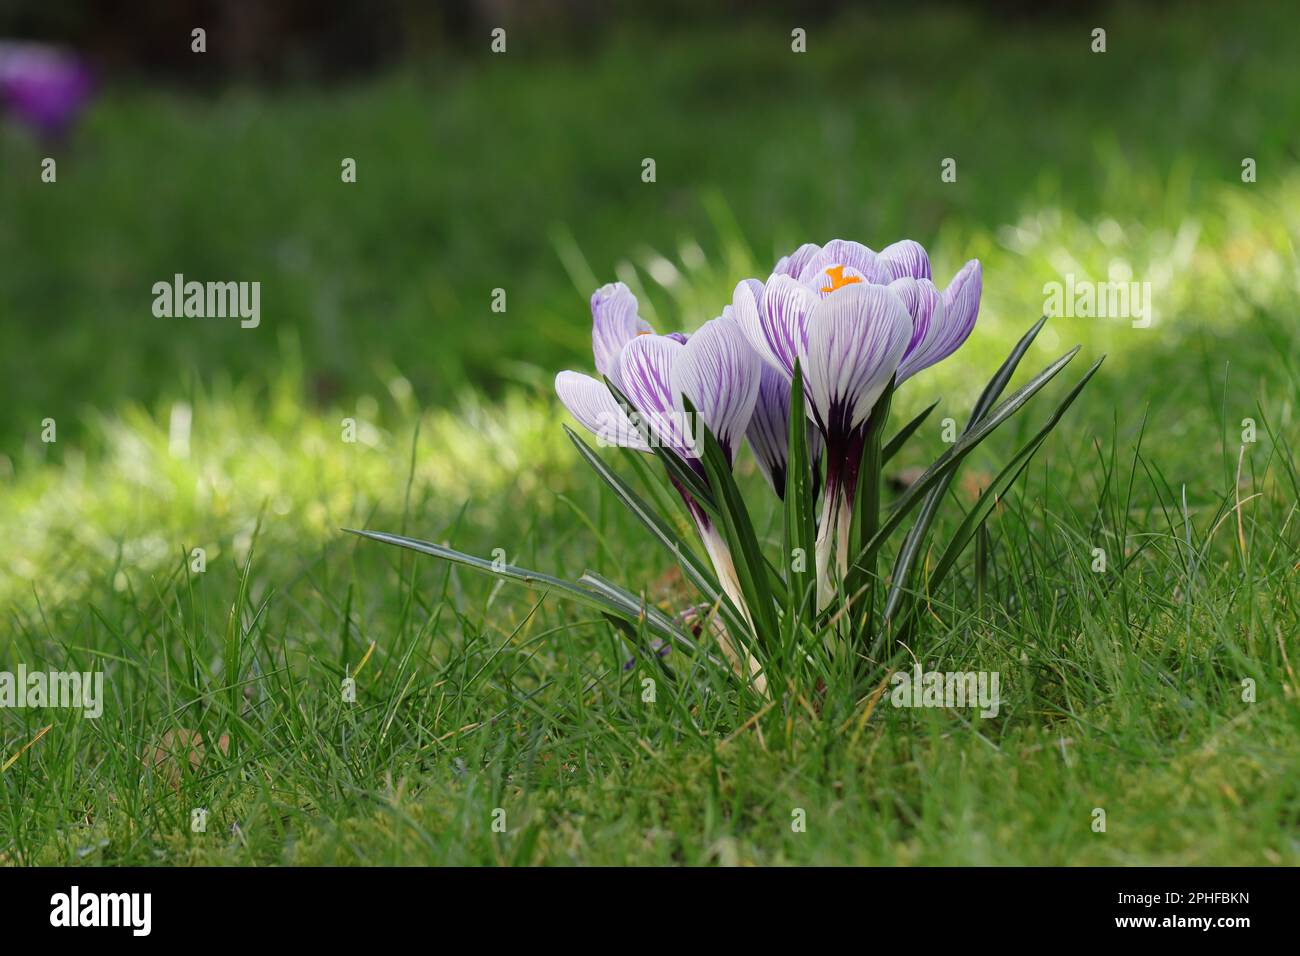 Gros plan de crocus à rayures violettes et blanches sur une pelouse, vue latérale Banque D'Images